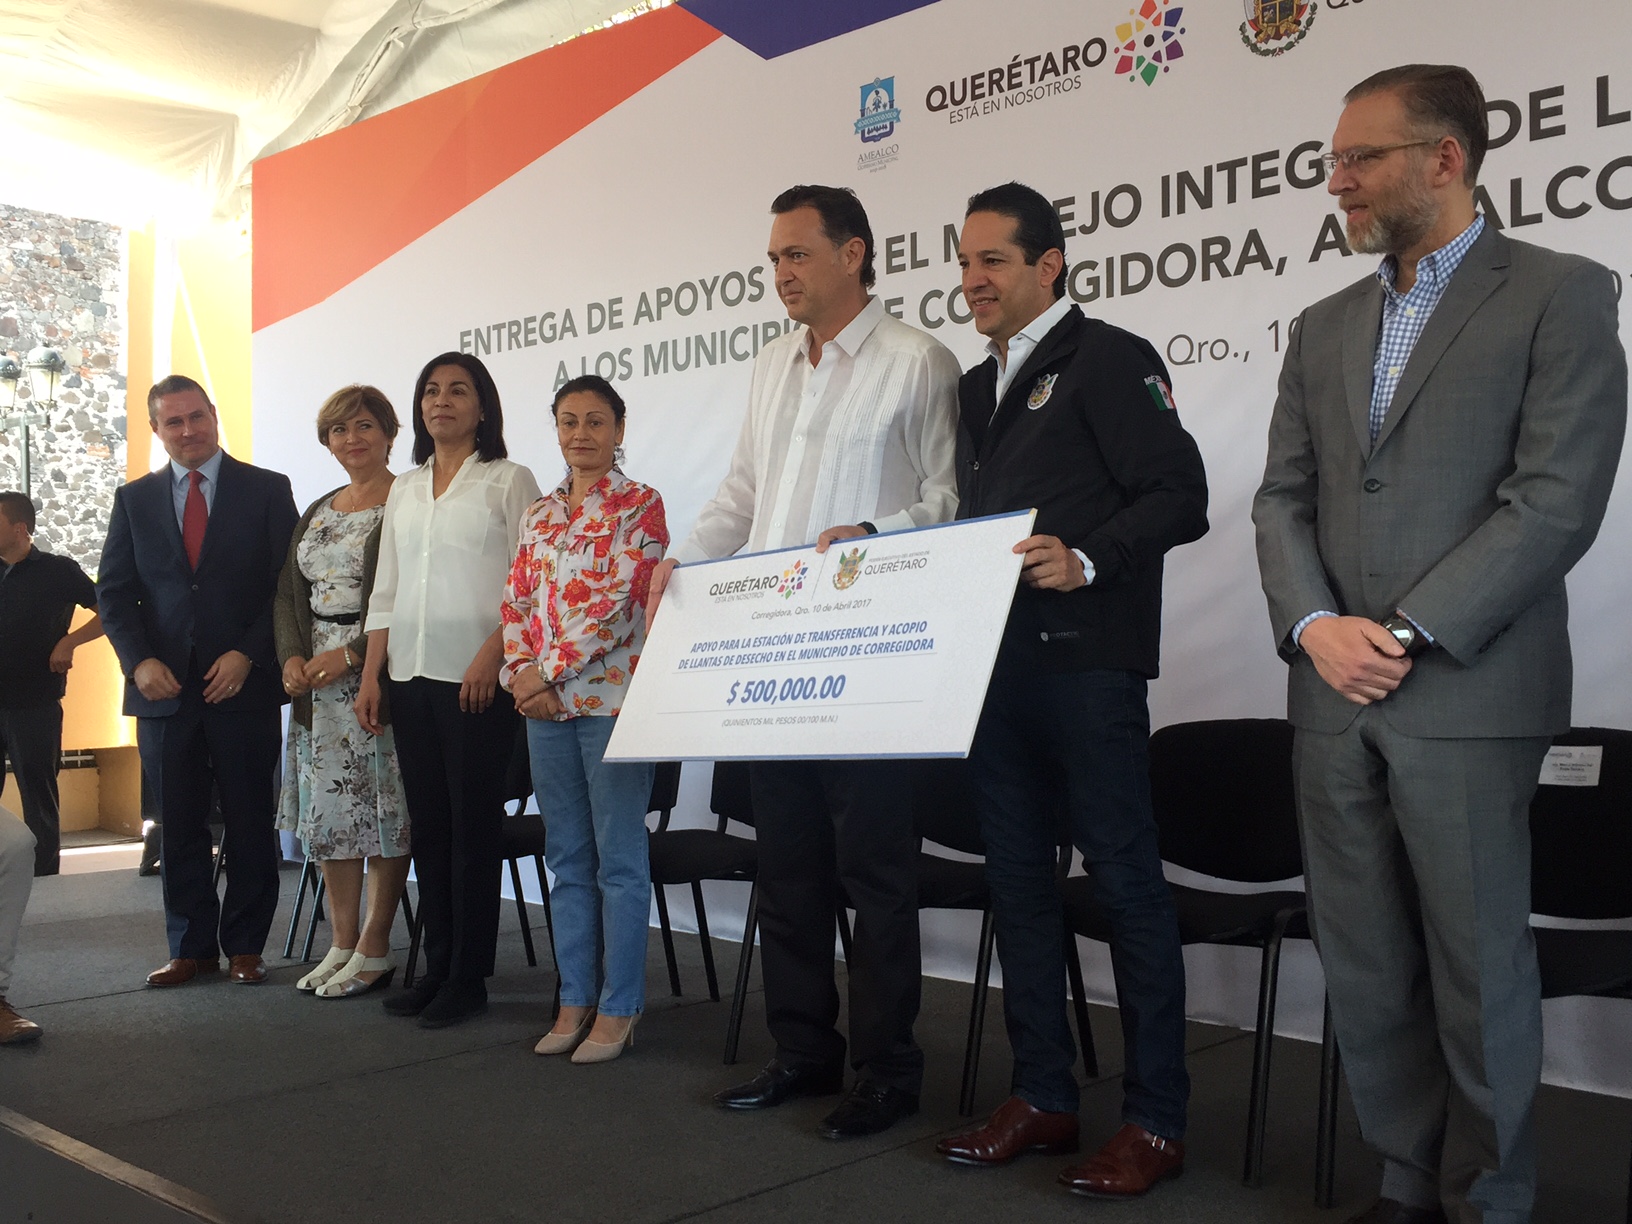  Querétaro destinará 35 mdp anuales para manejo de residuos en Corregidora, Amealco y Huimilpan